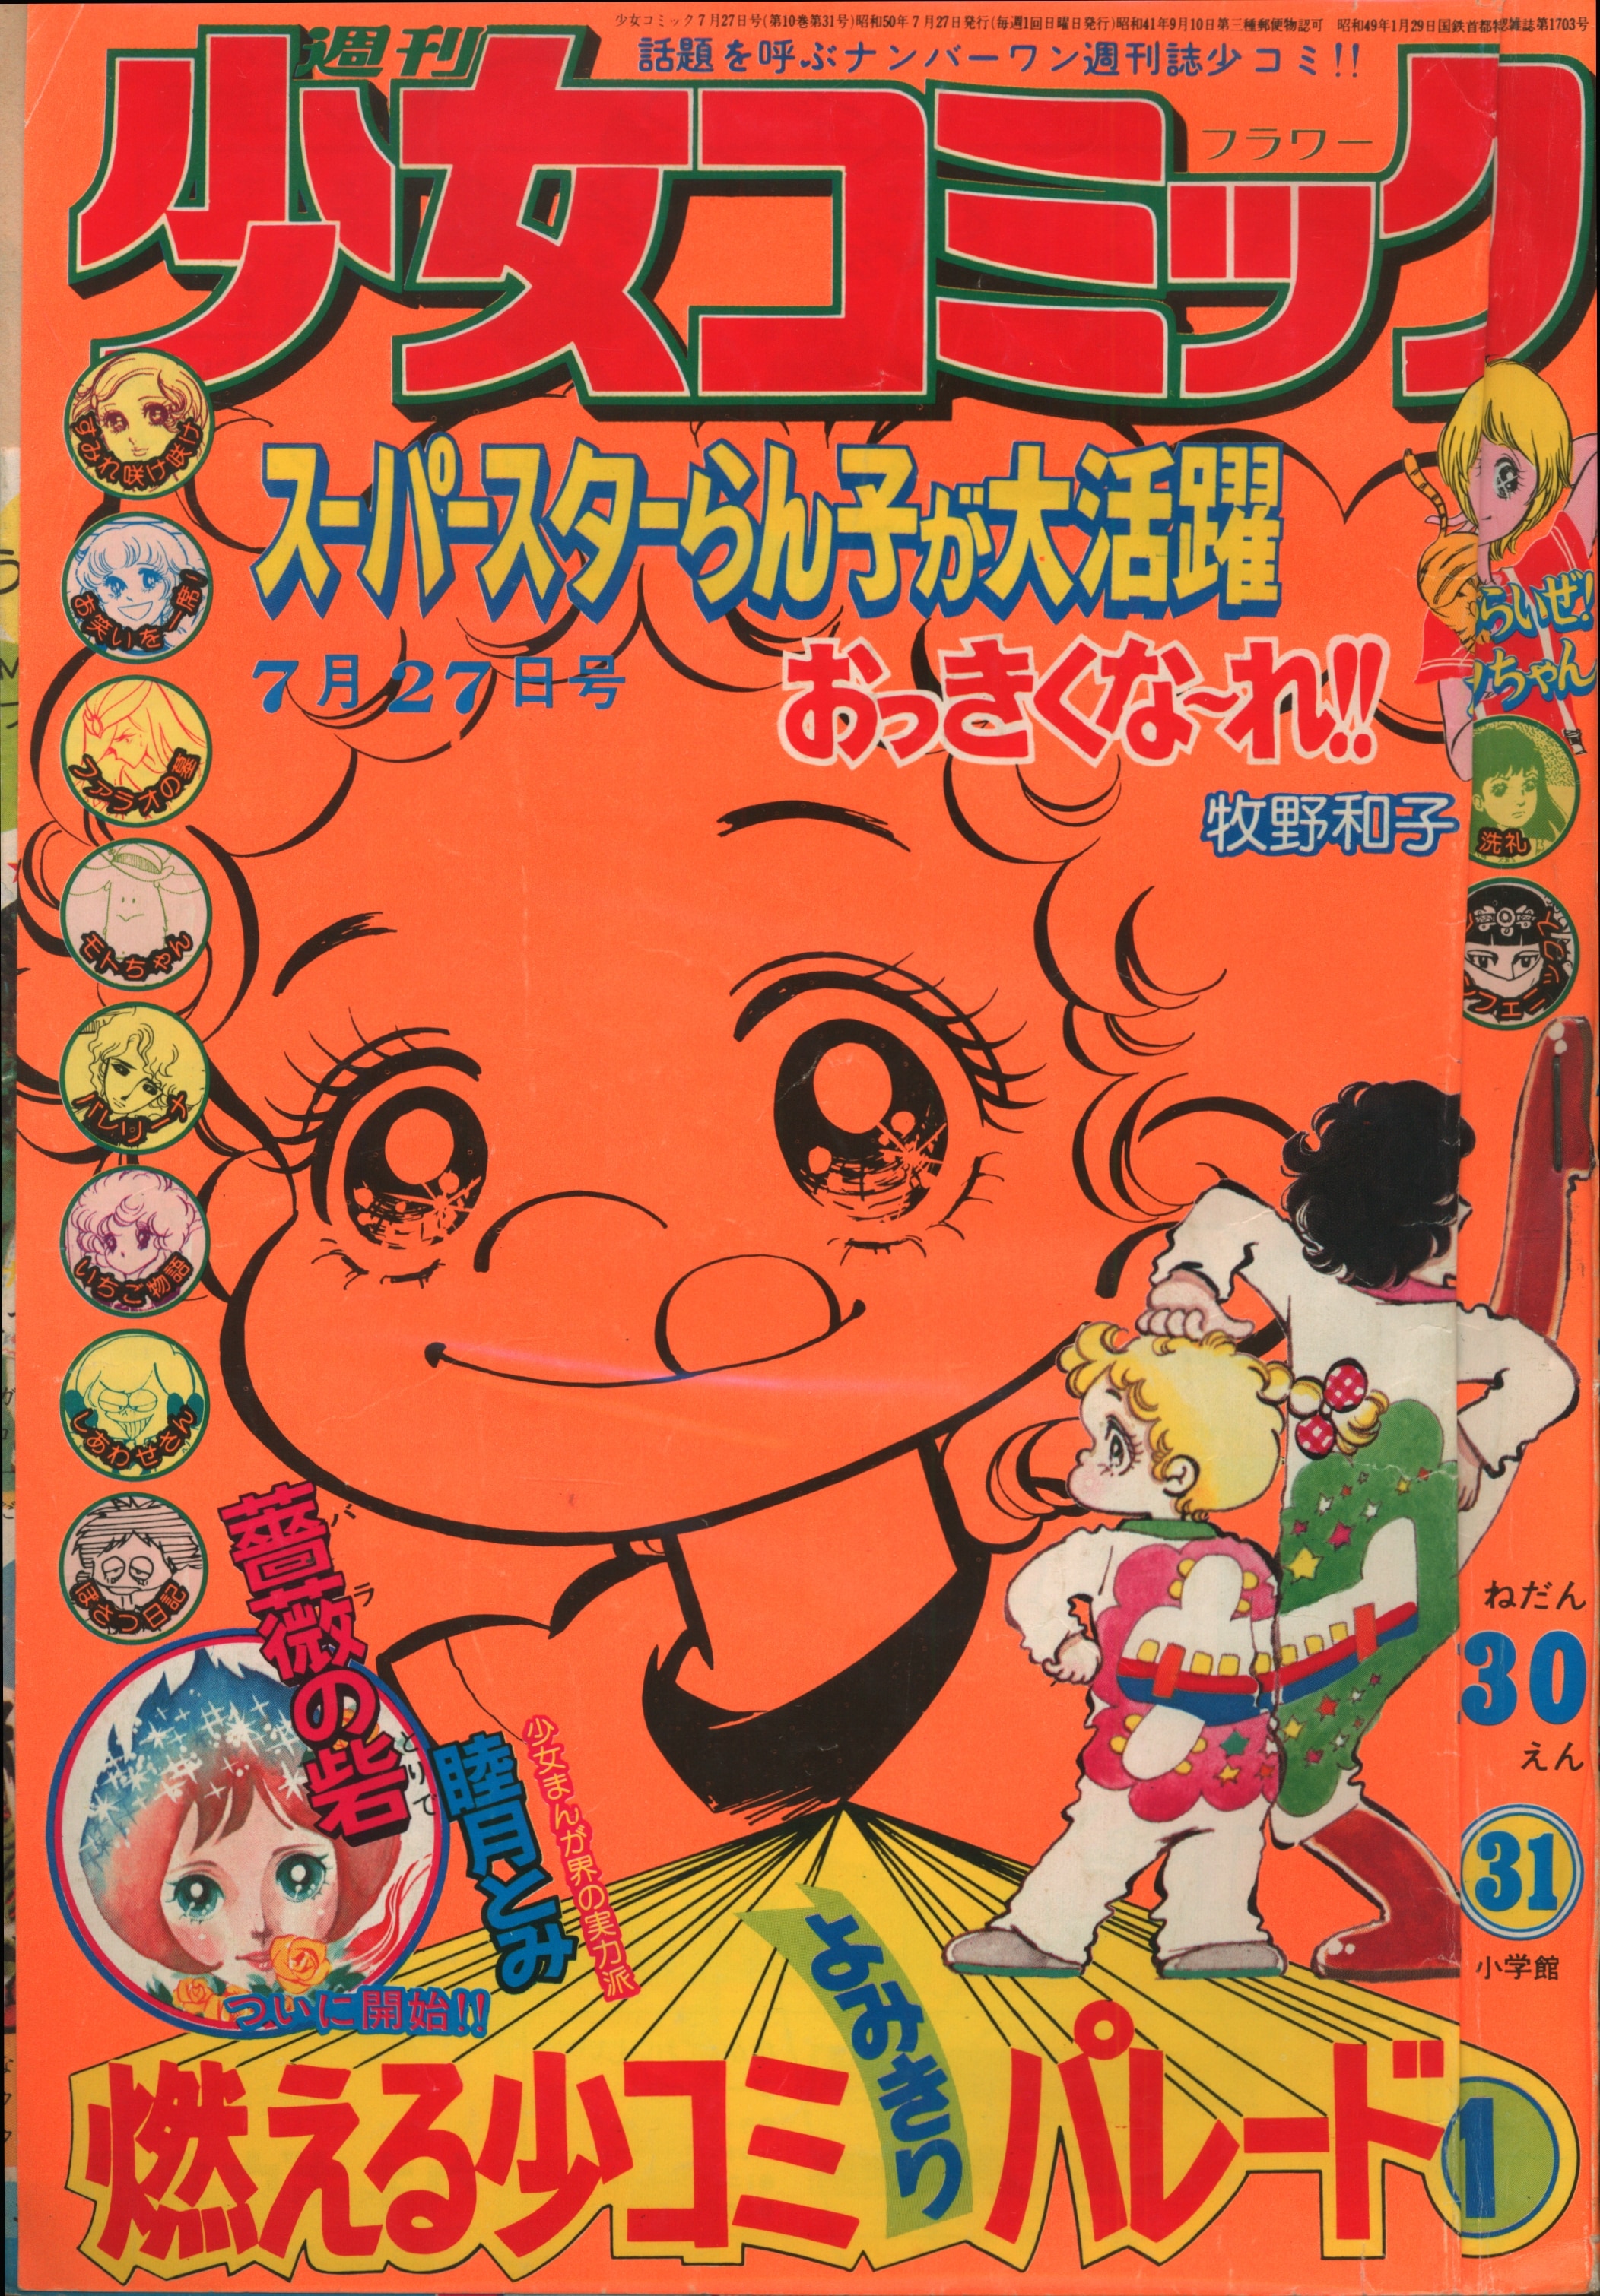 小学館 1975年 昭和50年 の漫画雑誌 週刊少女コミック1975年 昭和50年 31 7531 まんだらけ Mandarake